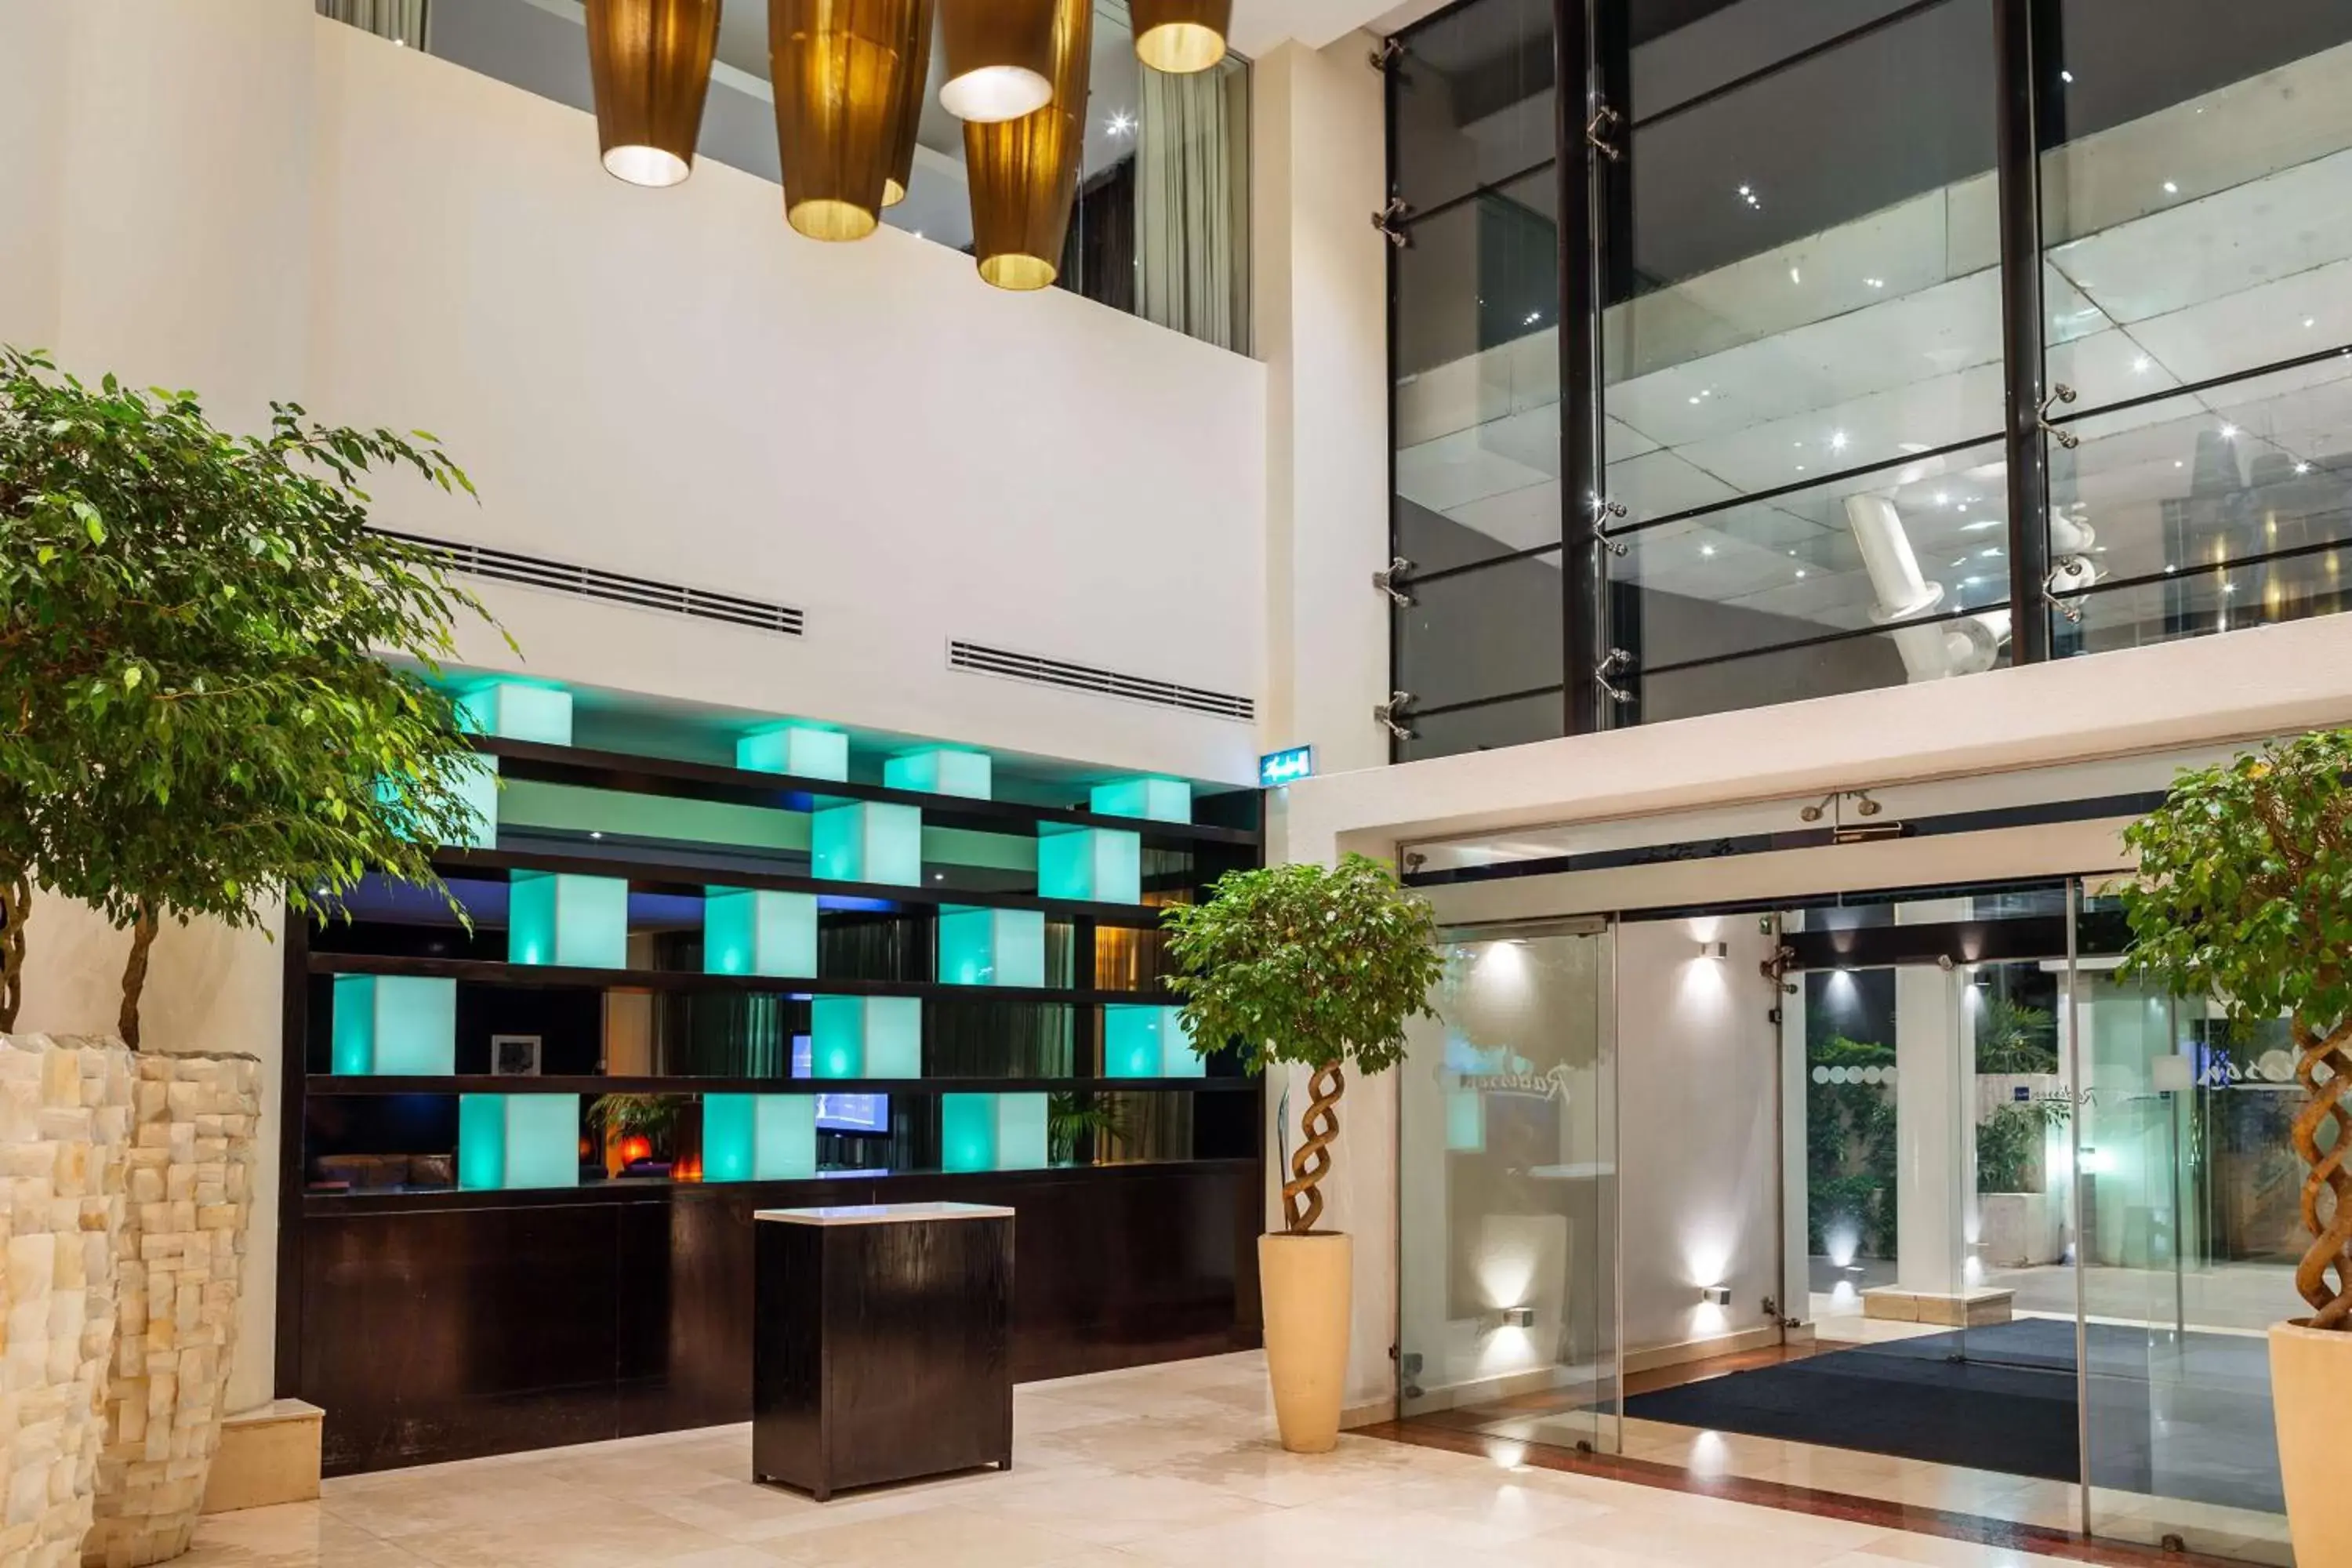 Lobby or reception, Lobby/Reception in Radisson Blu Hotel, Addis Ababa